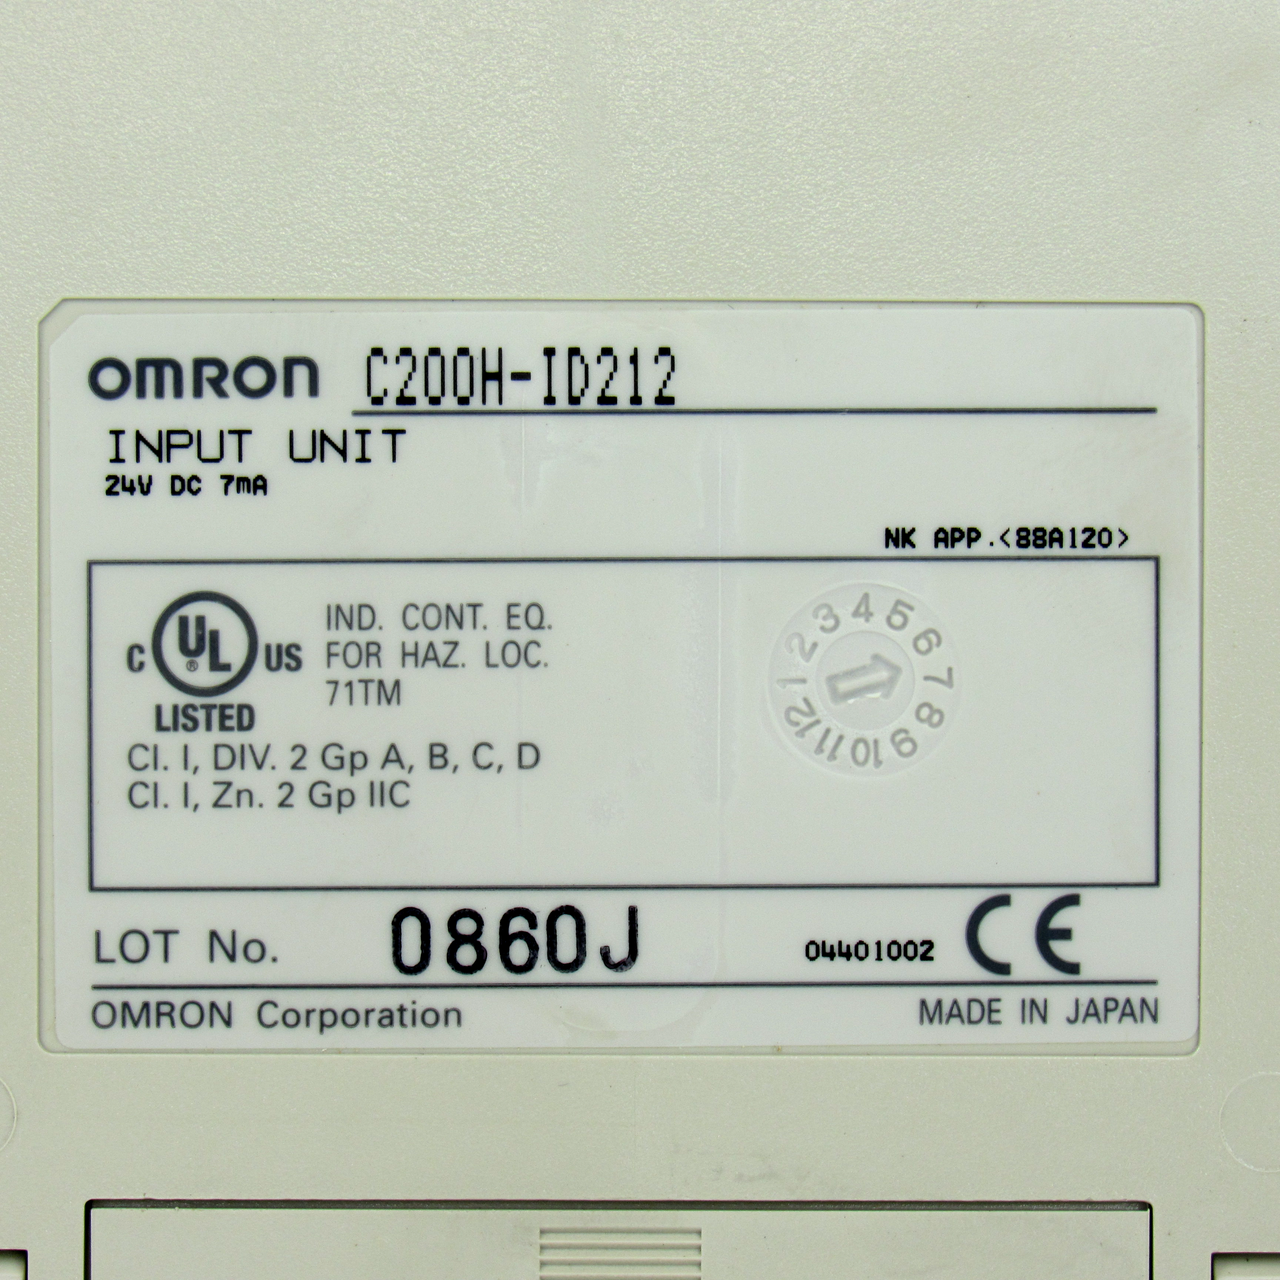 Omron C200H-ID212 Input Unit, 24V DC, 7mA, NEW